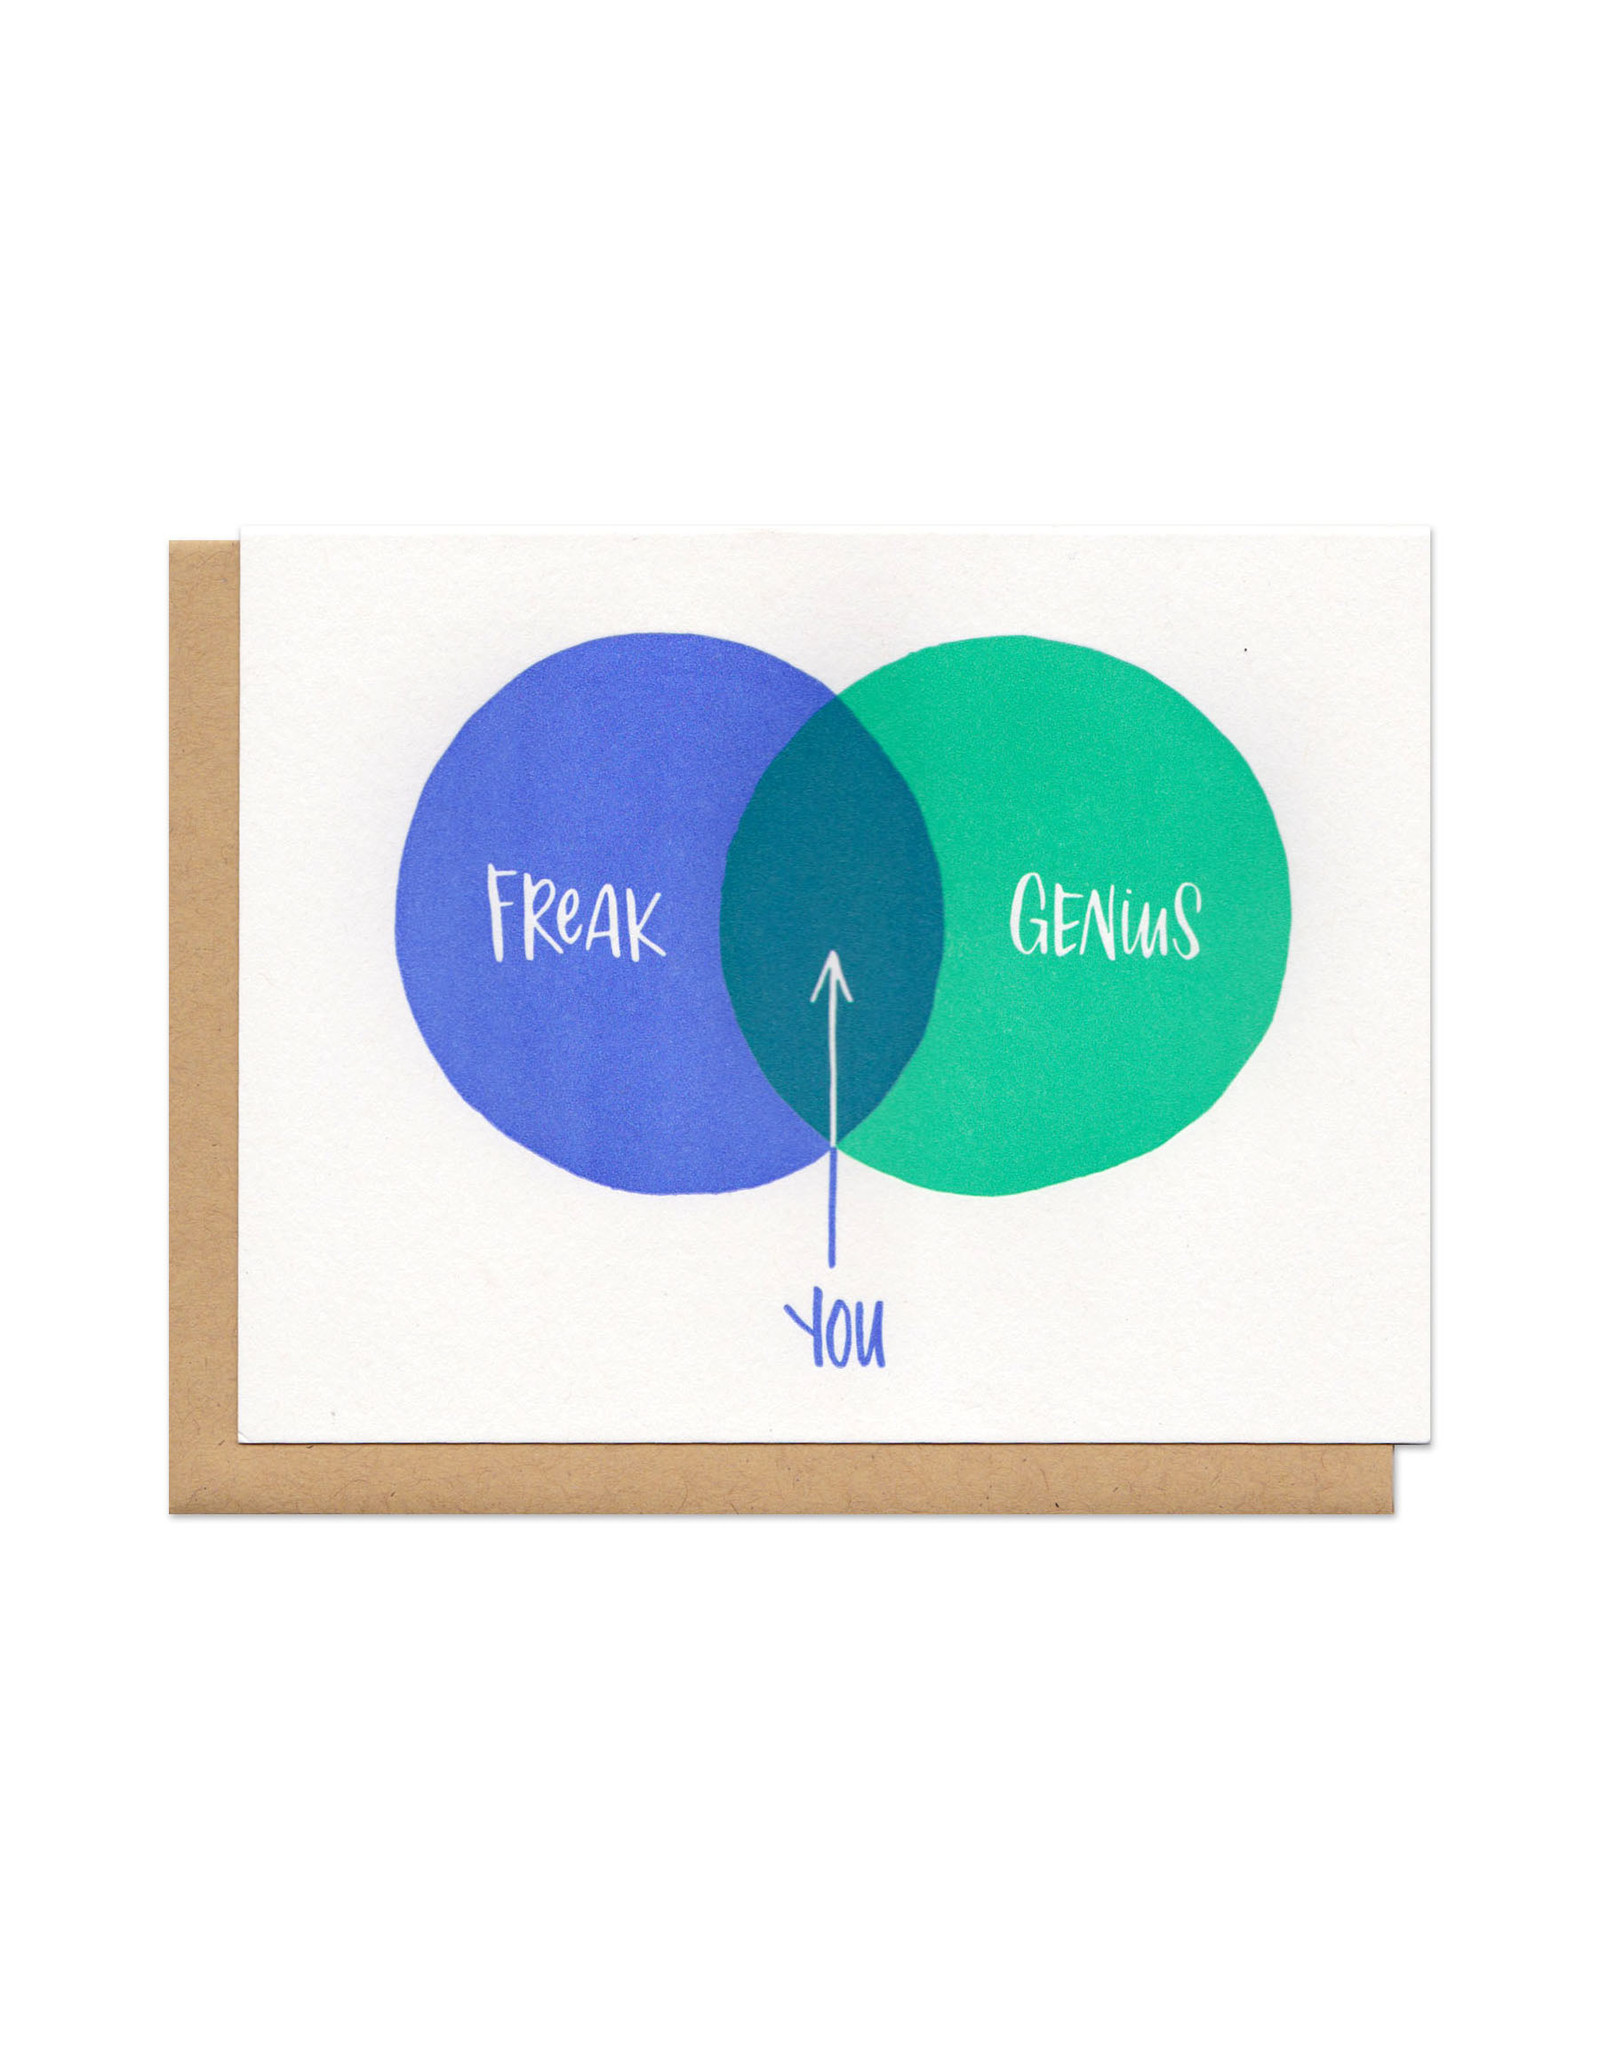 Freak + Genius = You Ven Diagram Greeting Card